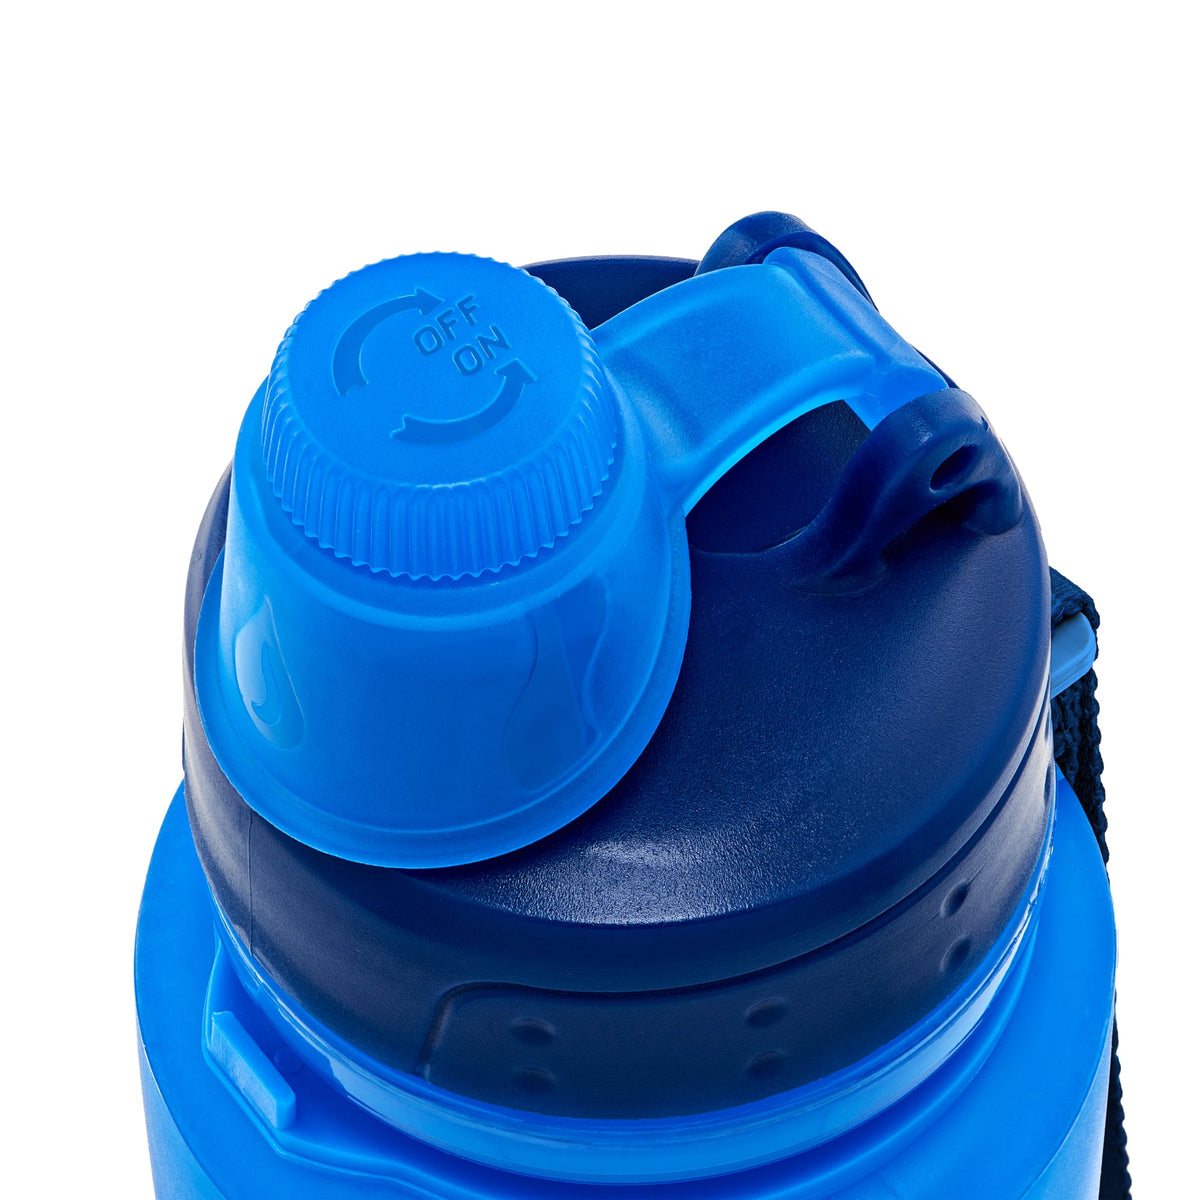 http://shop.nomader.com/cdn/shop/products/nomader_leak_proof_water_bottle_blue_4c53adf1-d497-4181-b851-5f5824f767d0_1200x1200.jpg?v=1656204912